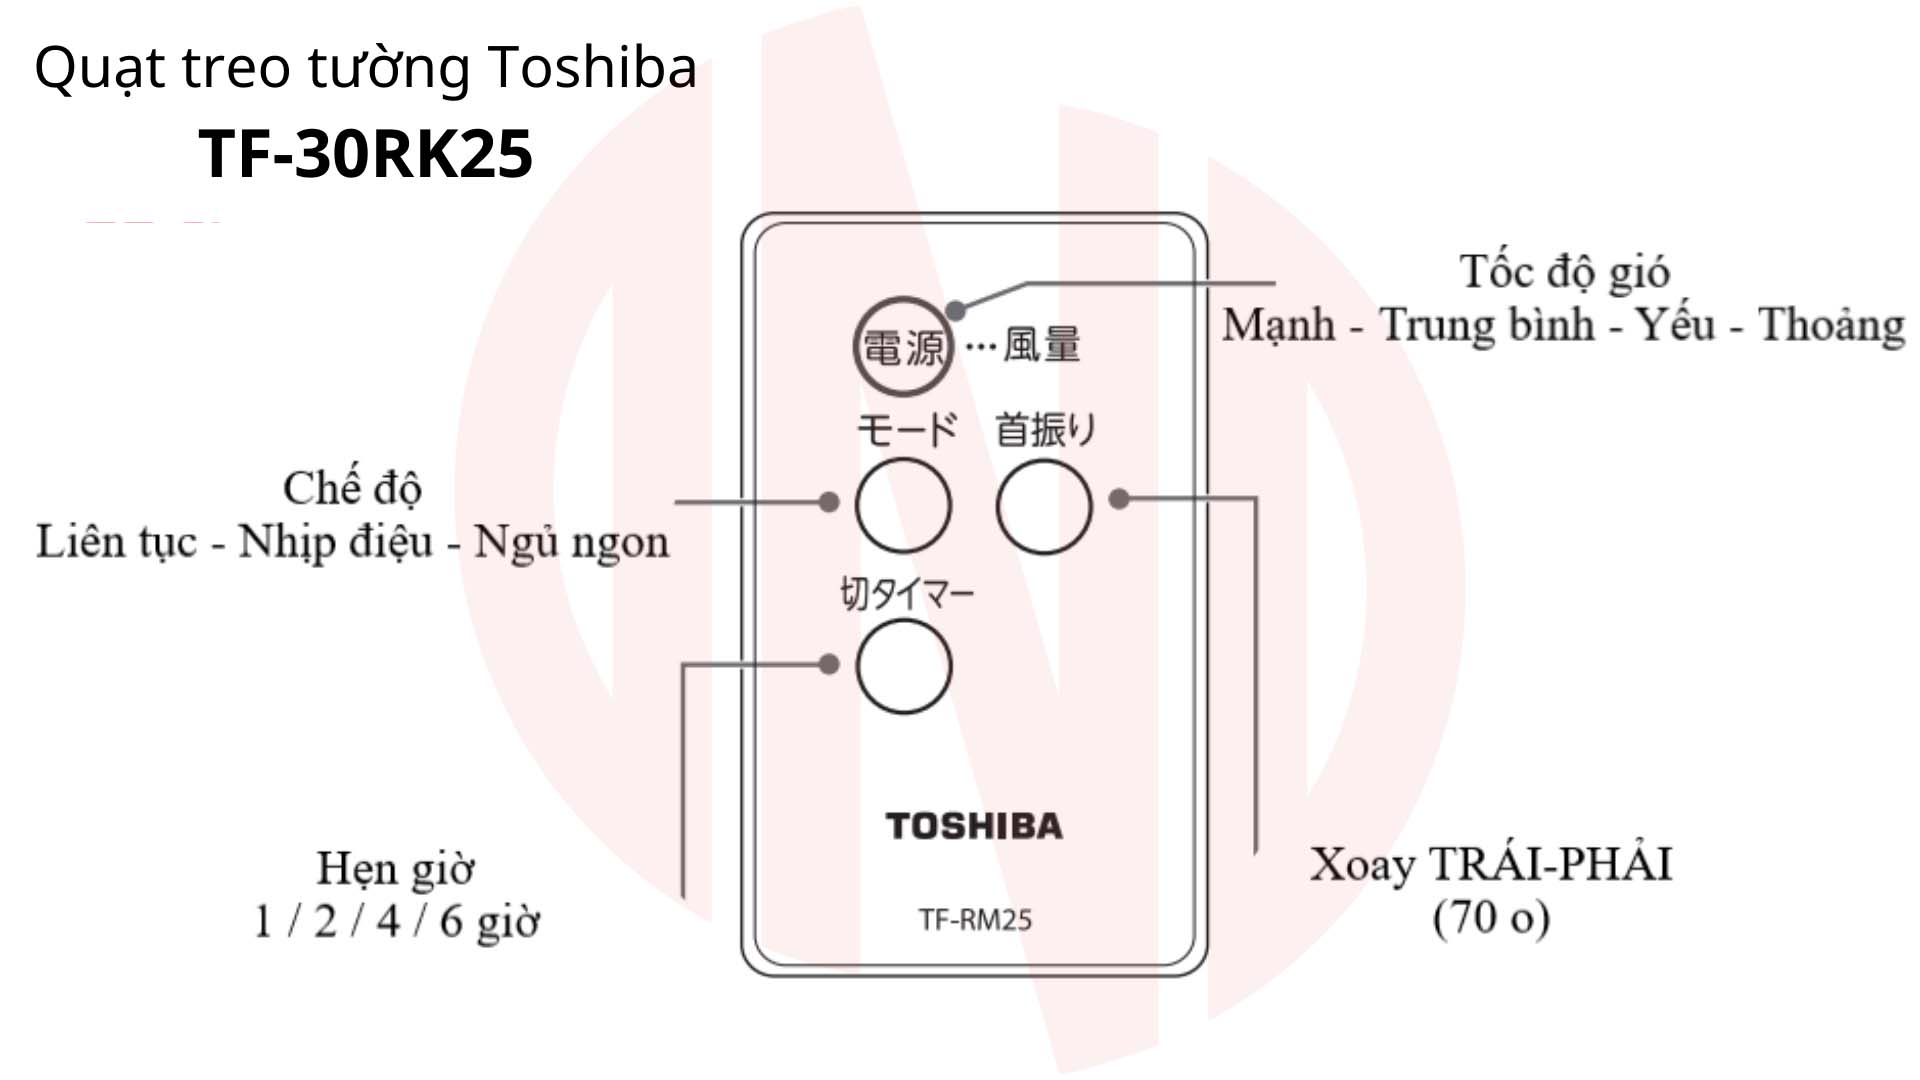 Hướng dẫn sử dụng Quạt treo tường Toshiba TF-30RK25